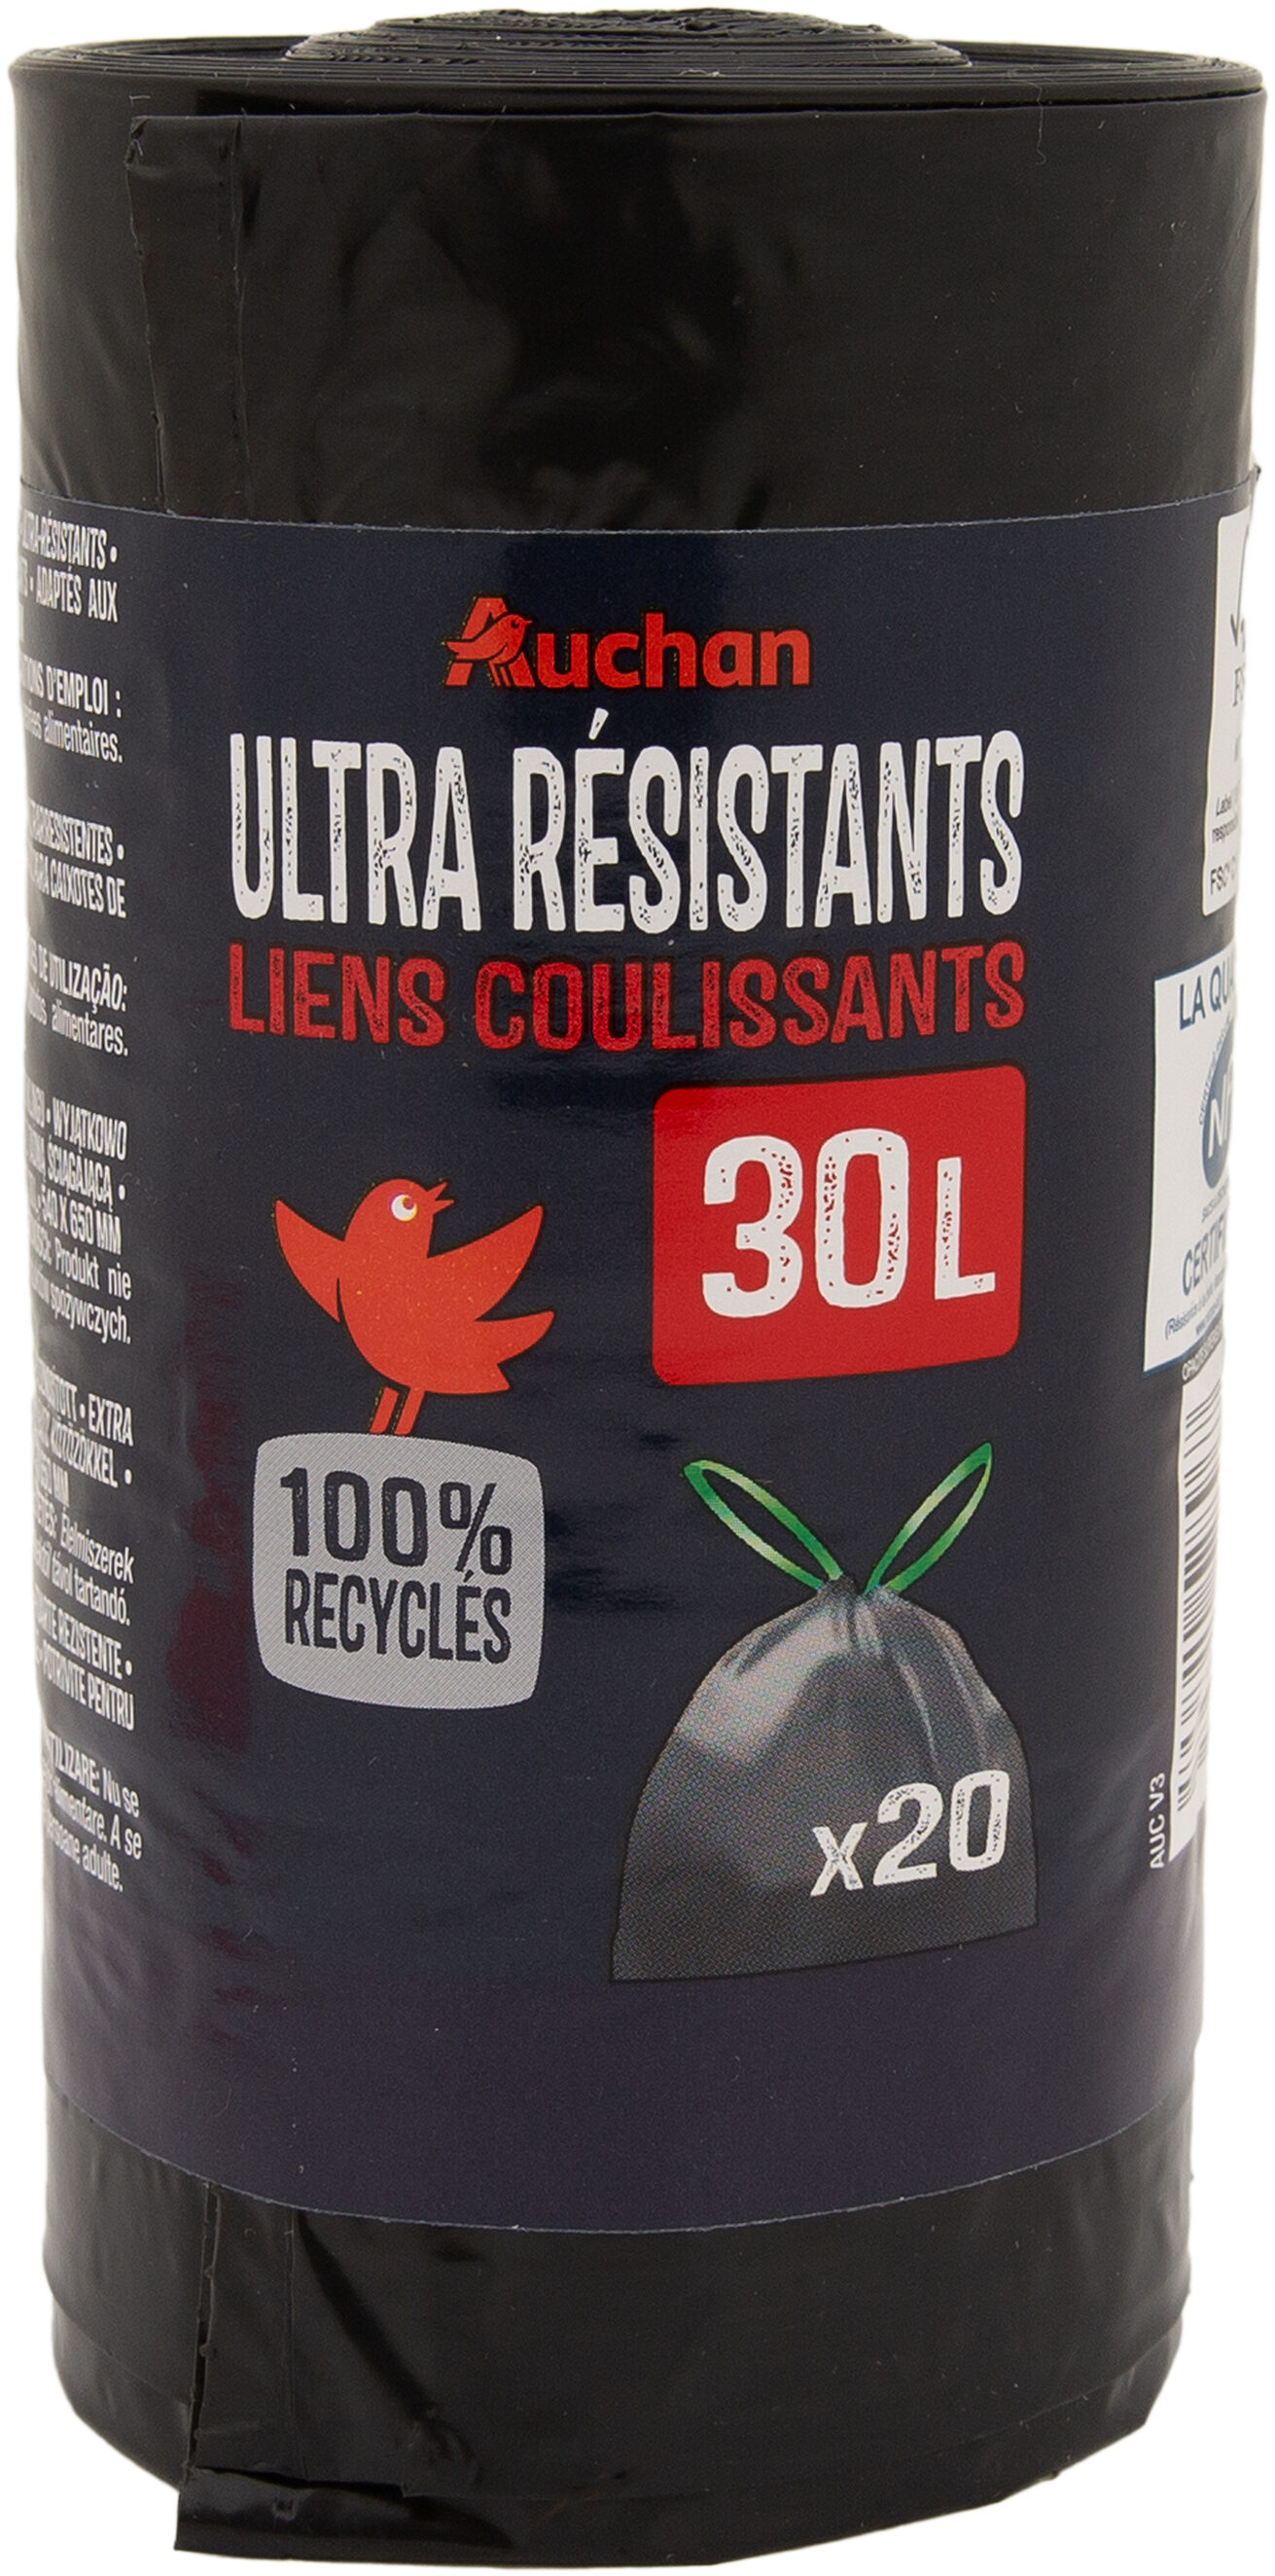 Sacs poubelle ultra-résistants liens coulissants 30 litres - Produit - fr